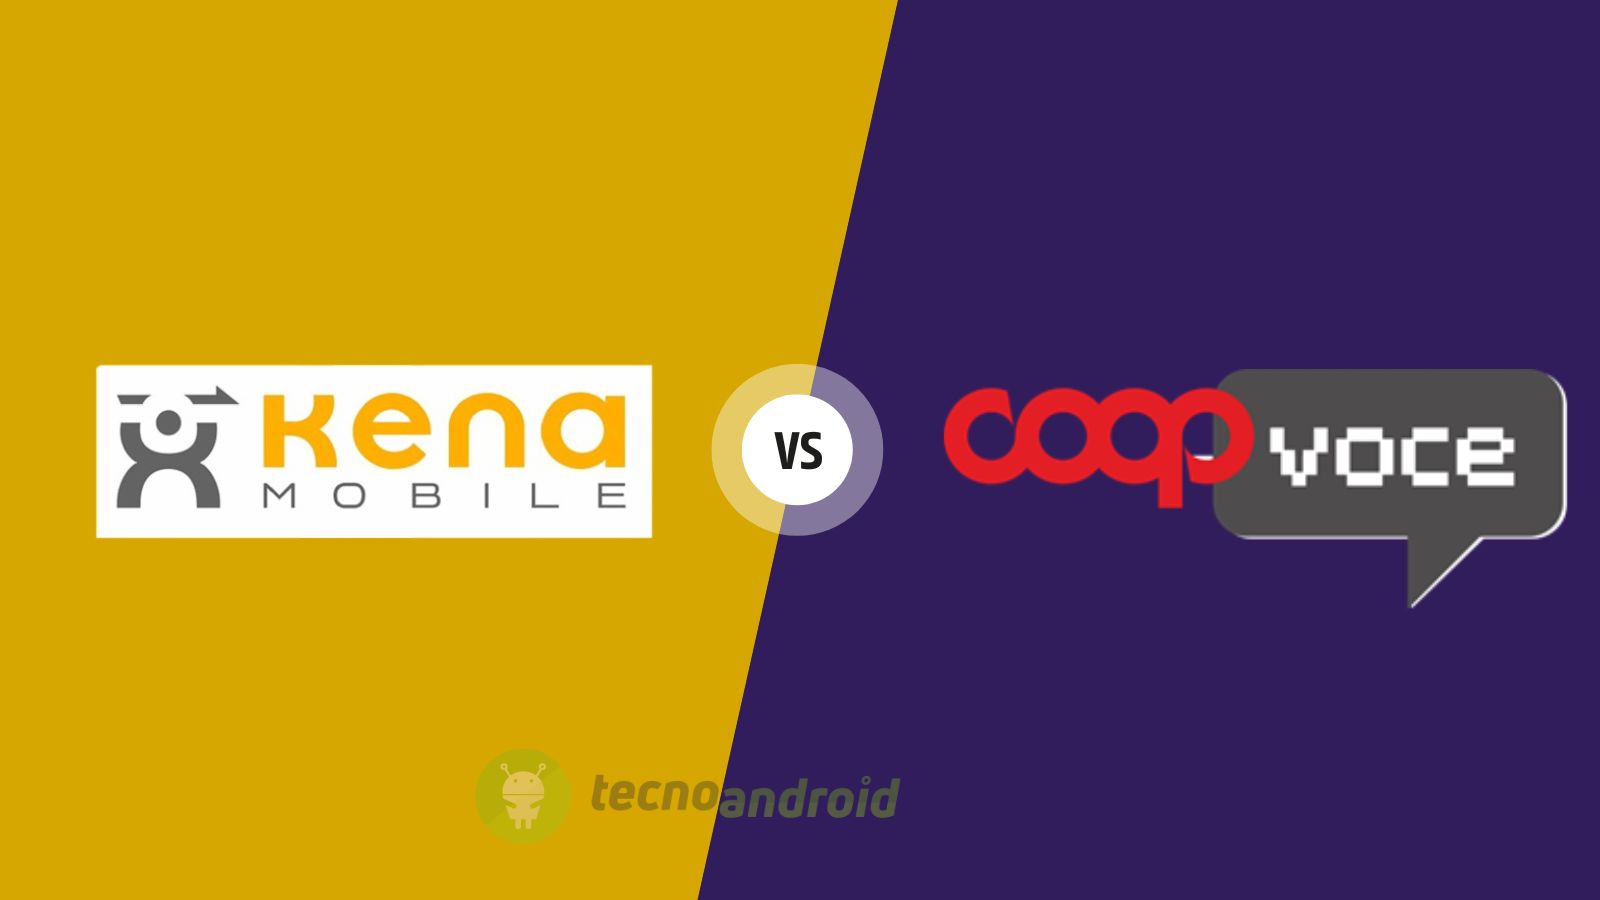 CoopVoce e Kena Mobile, le offerte virtuali a confronto: prezzi bassi e tanti giga